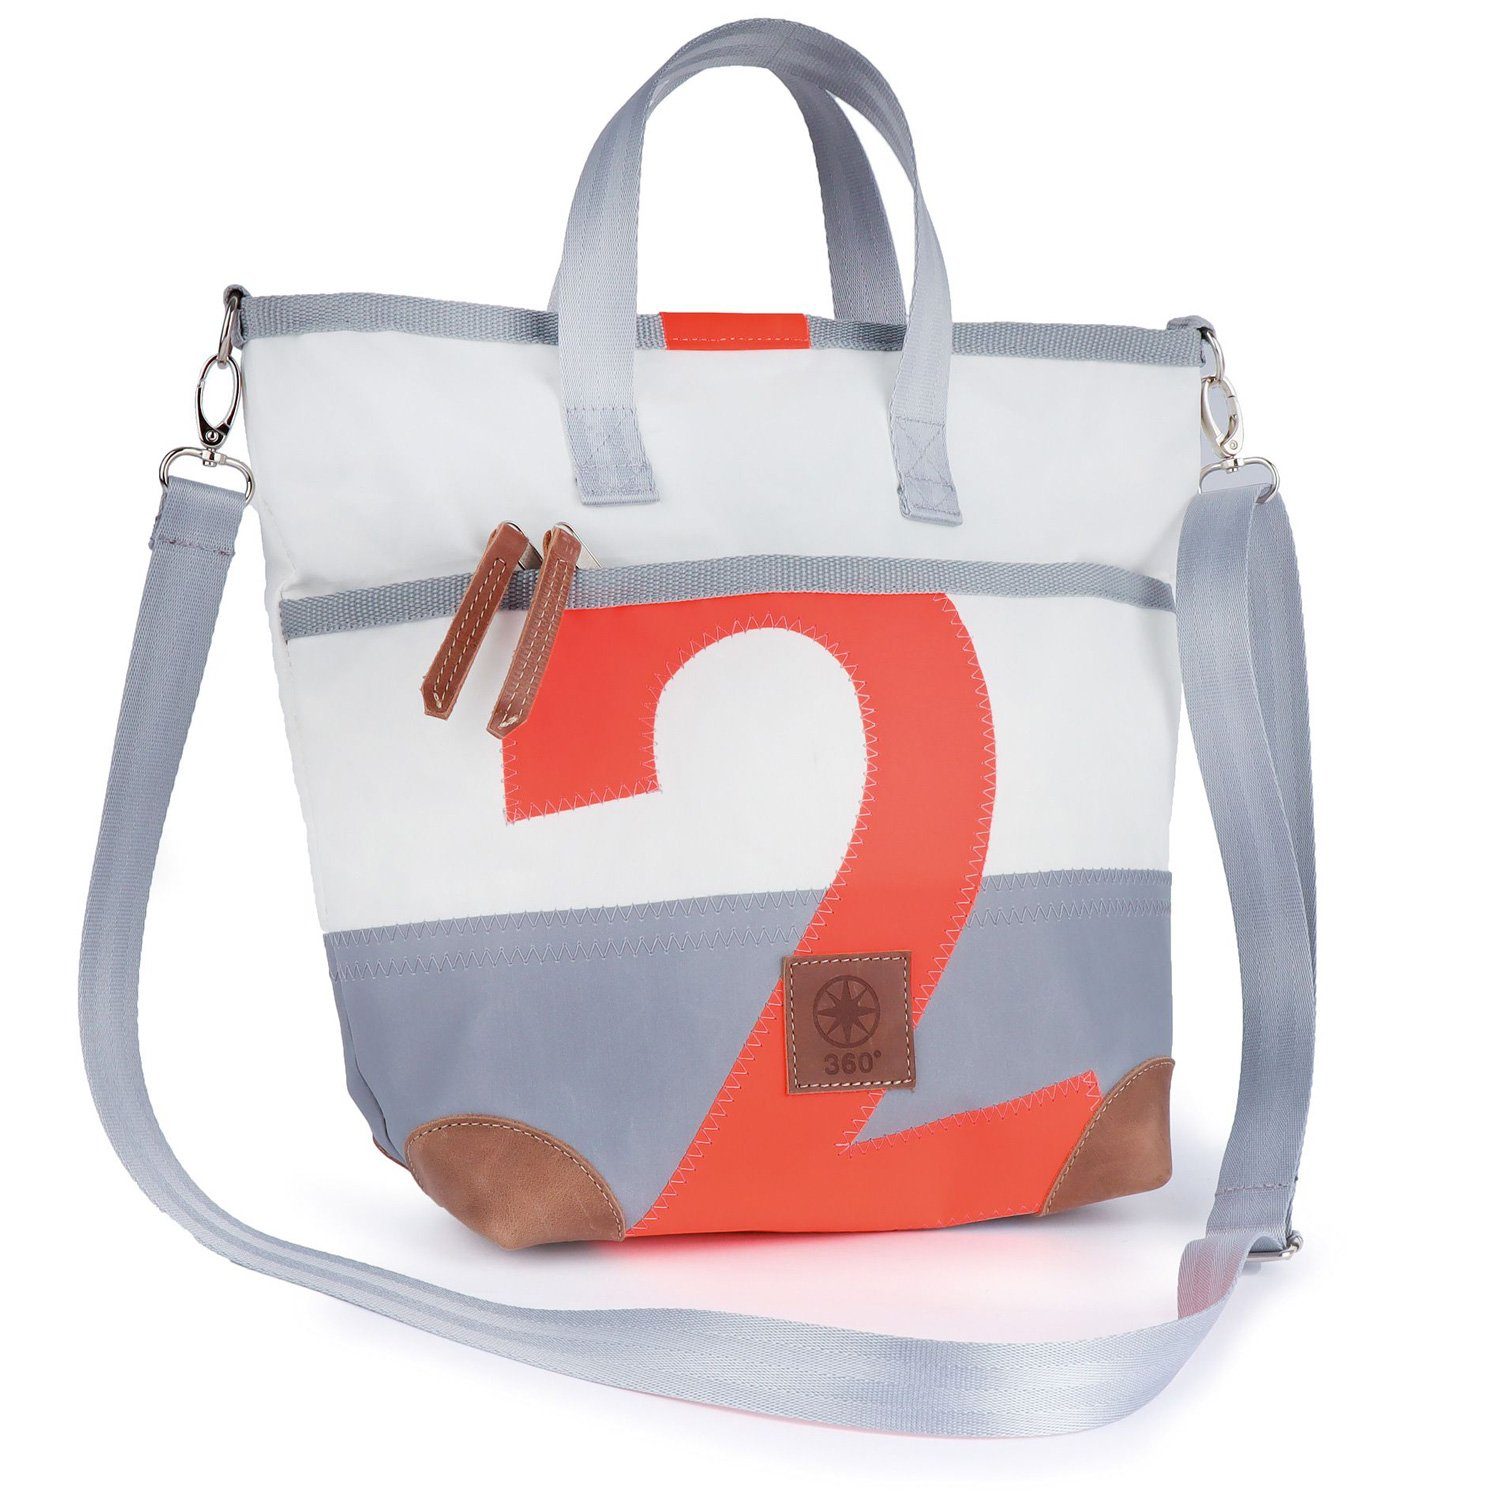 360Grad Handtasche Deern Mini Damen Handtasche Segeltuch weiß, Zahl orange Weiß/Grau mit oranger Zahl